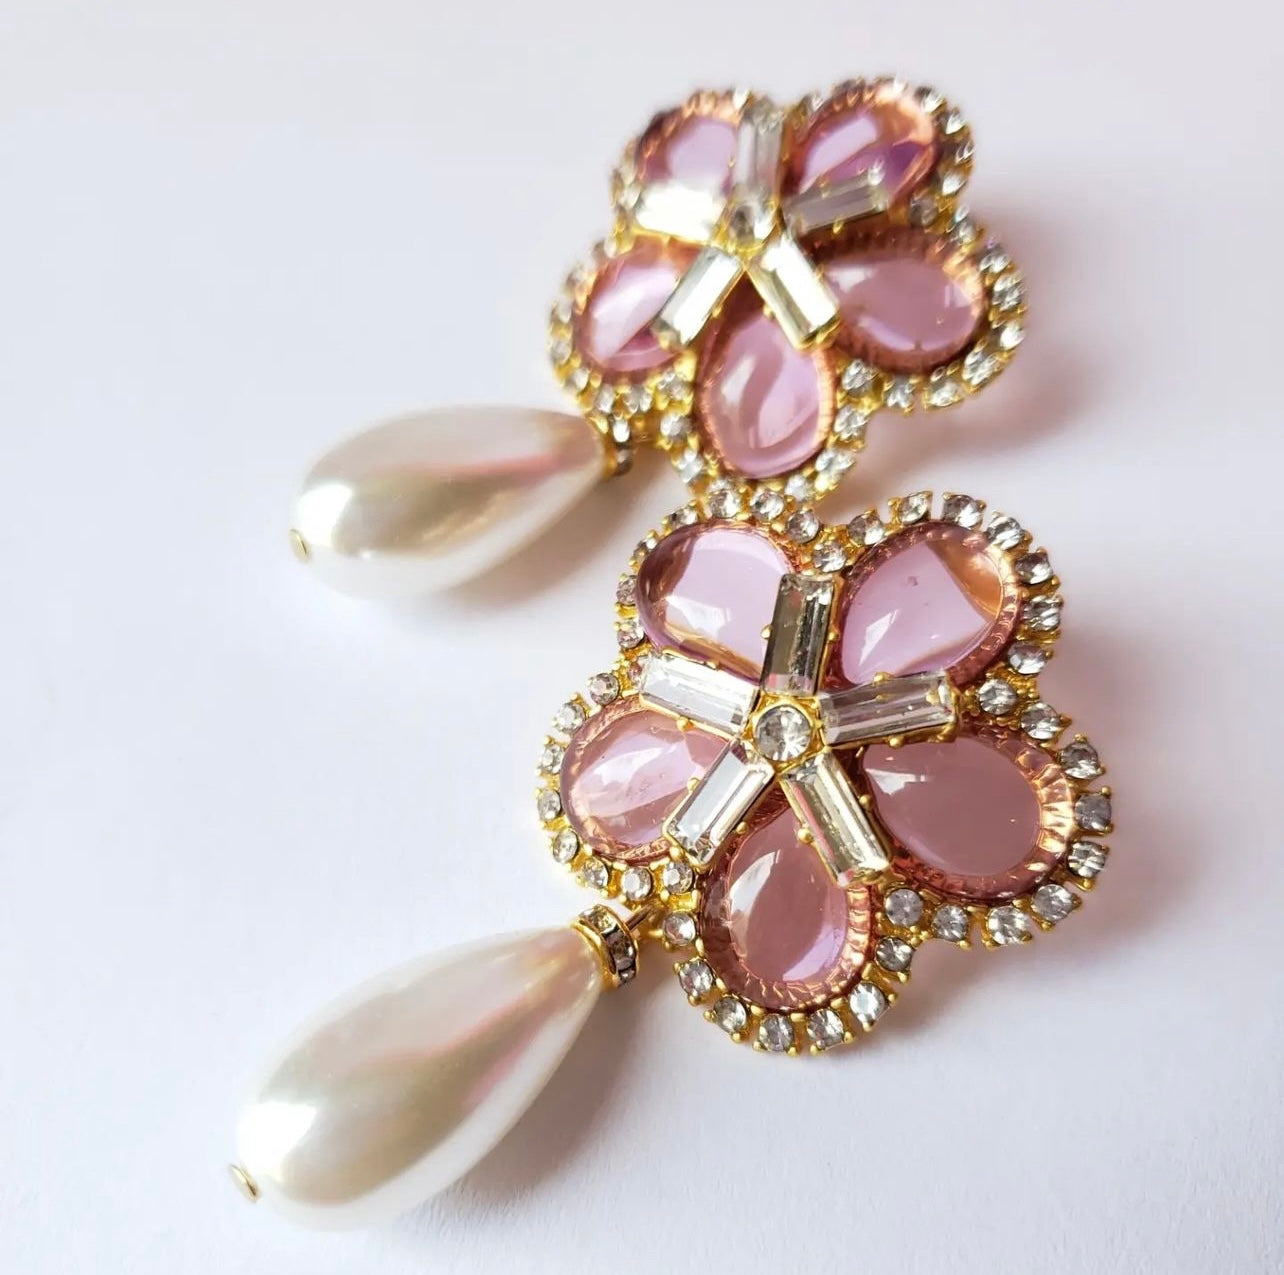 Aretes color rosa de cristales en forma de flor y perla colgante.